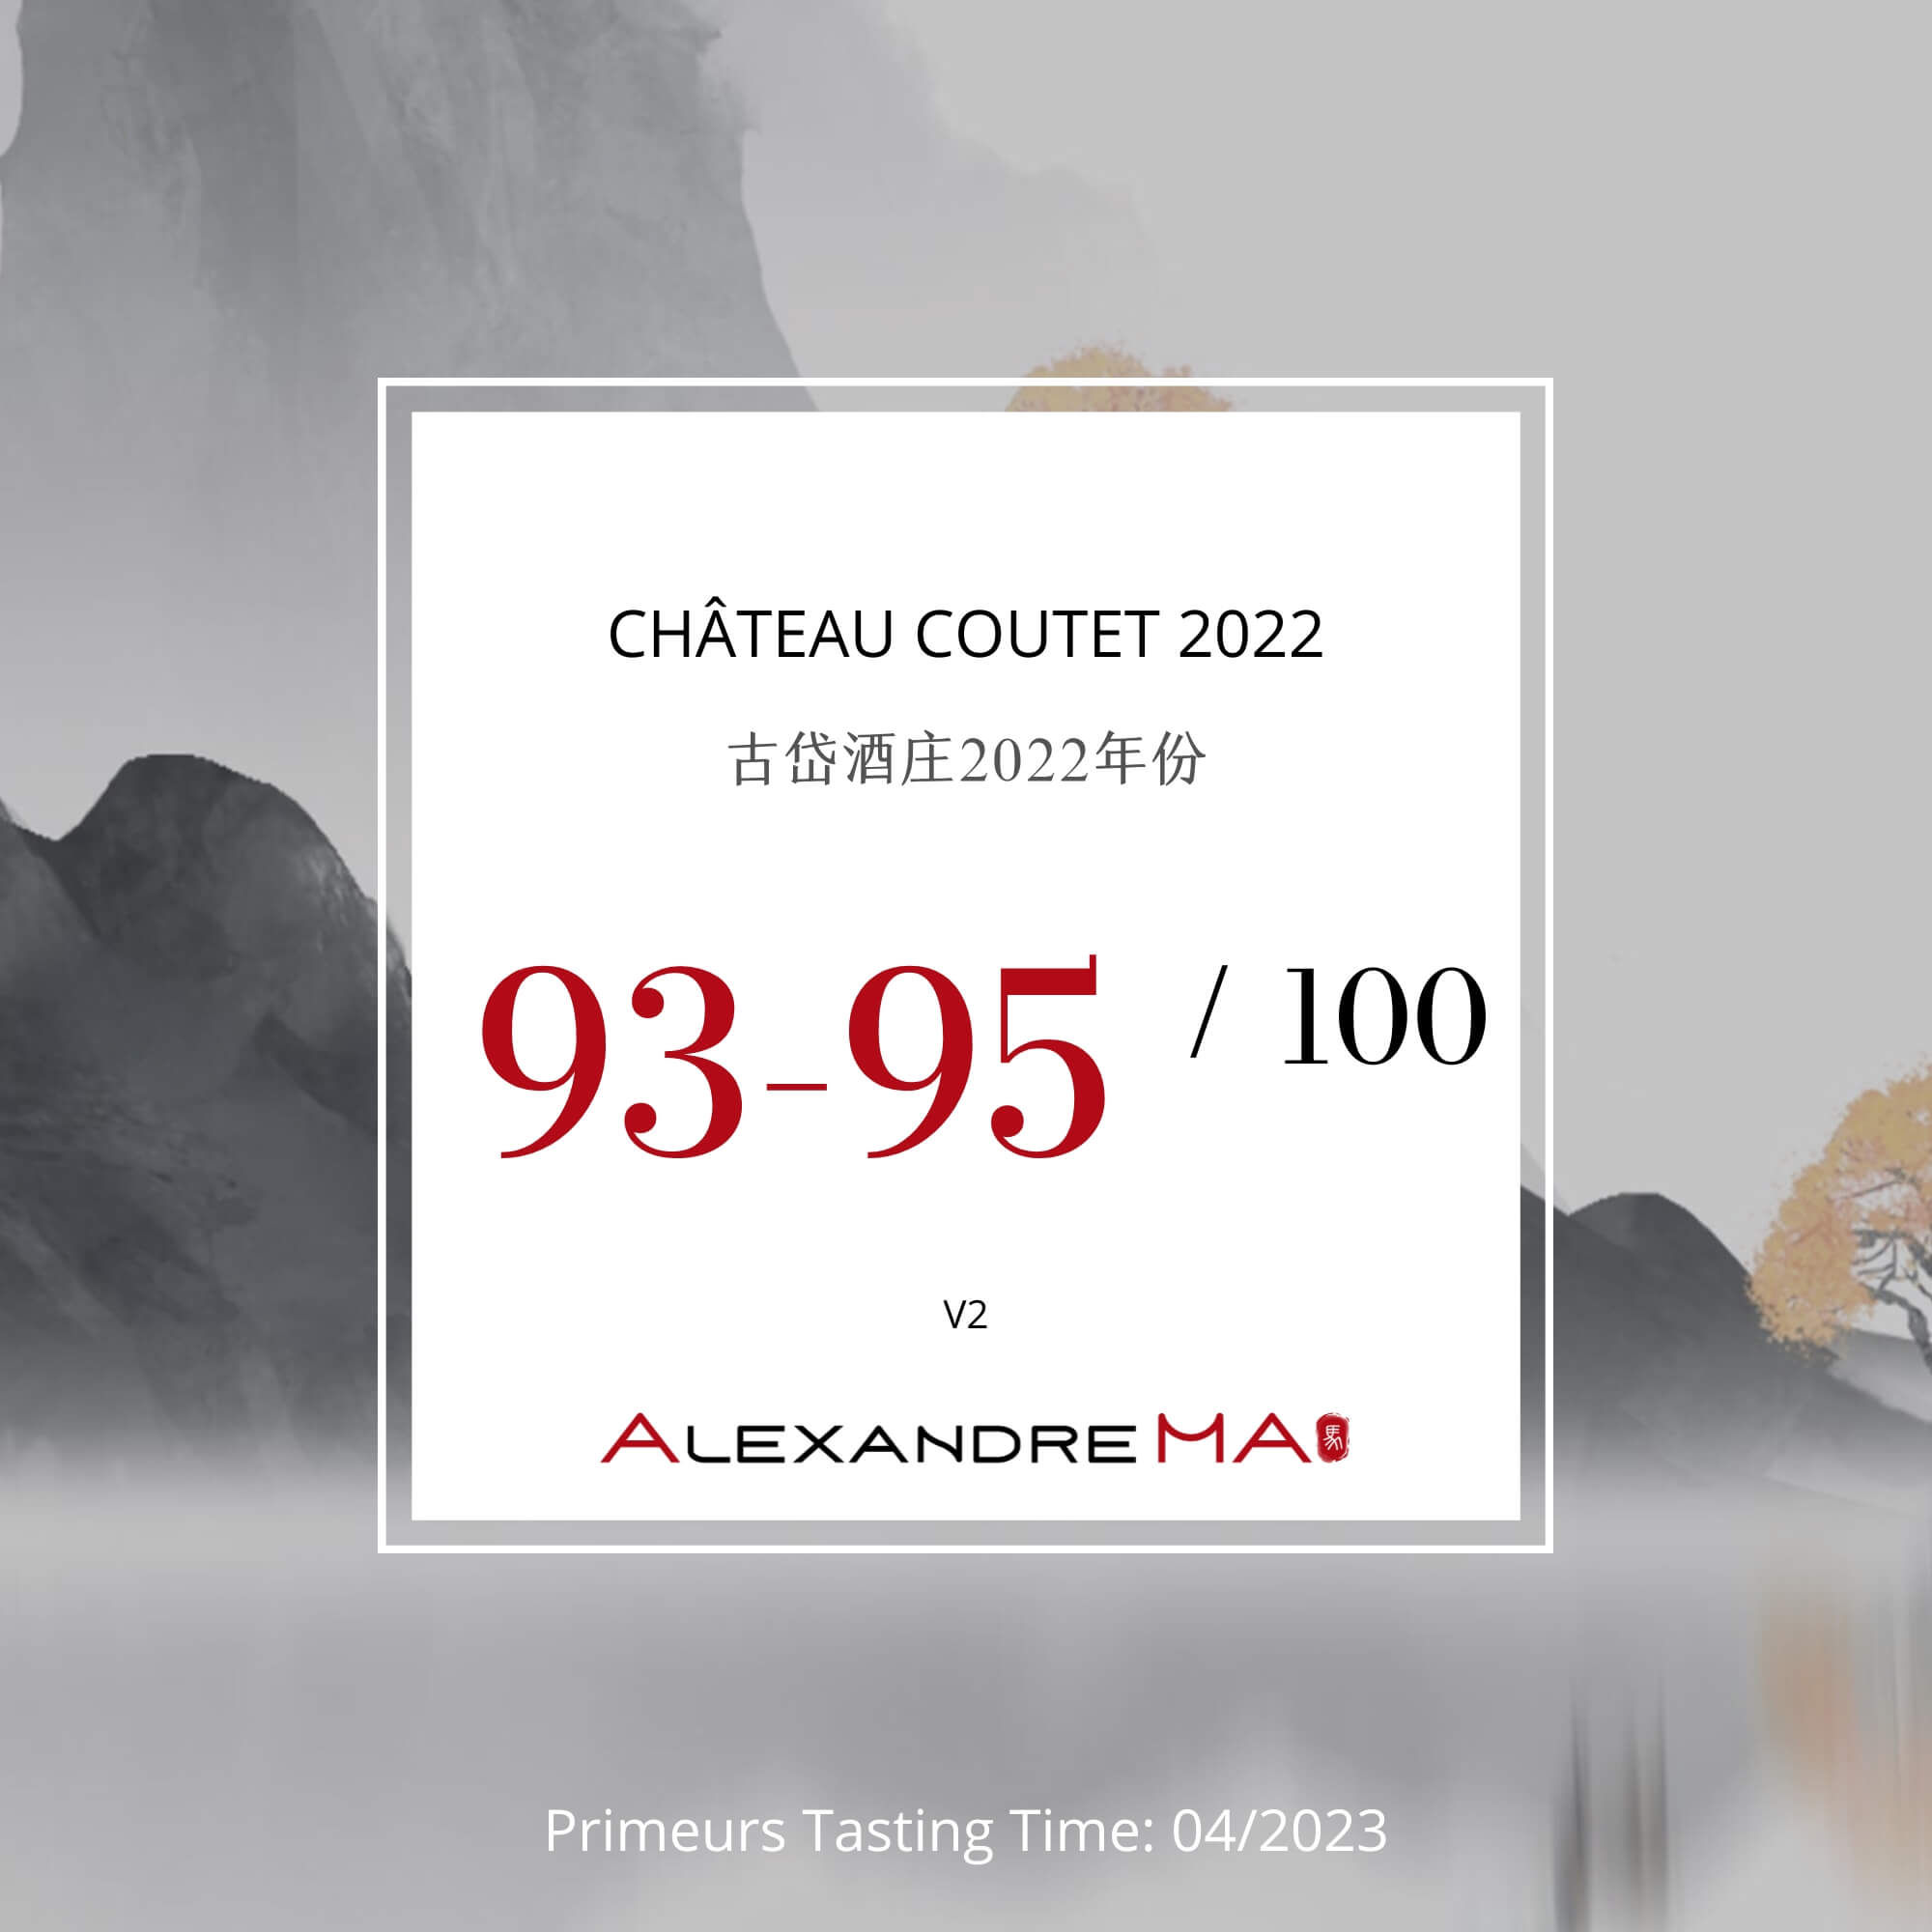 Château Coutet 2022 Primeurs - Alexandre MA